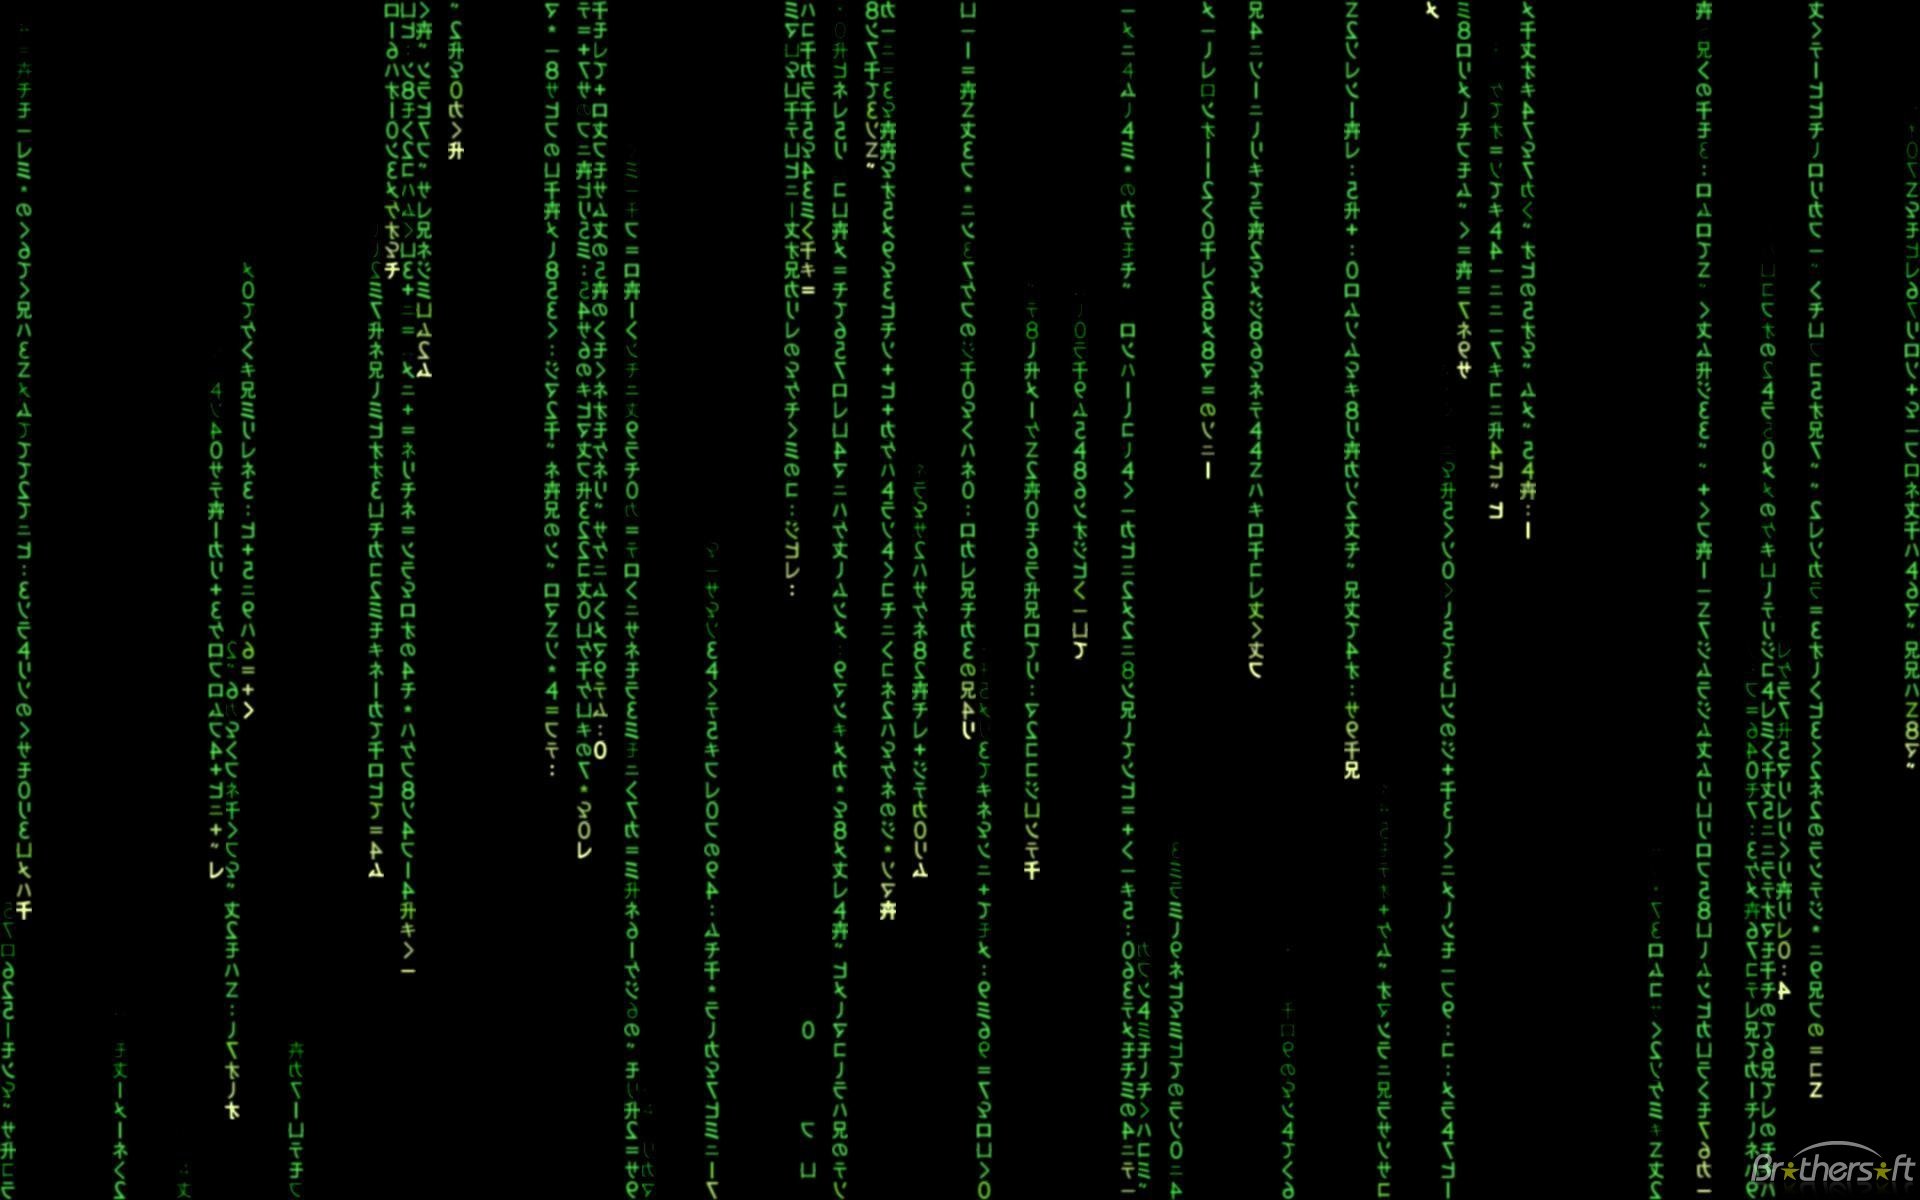 50+] The Matrix Wallpaper and Screensaver - WallpaperSafari